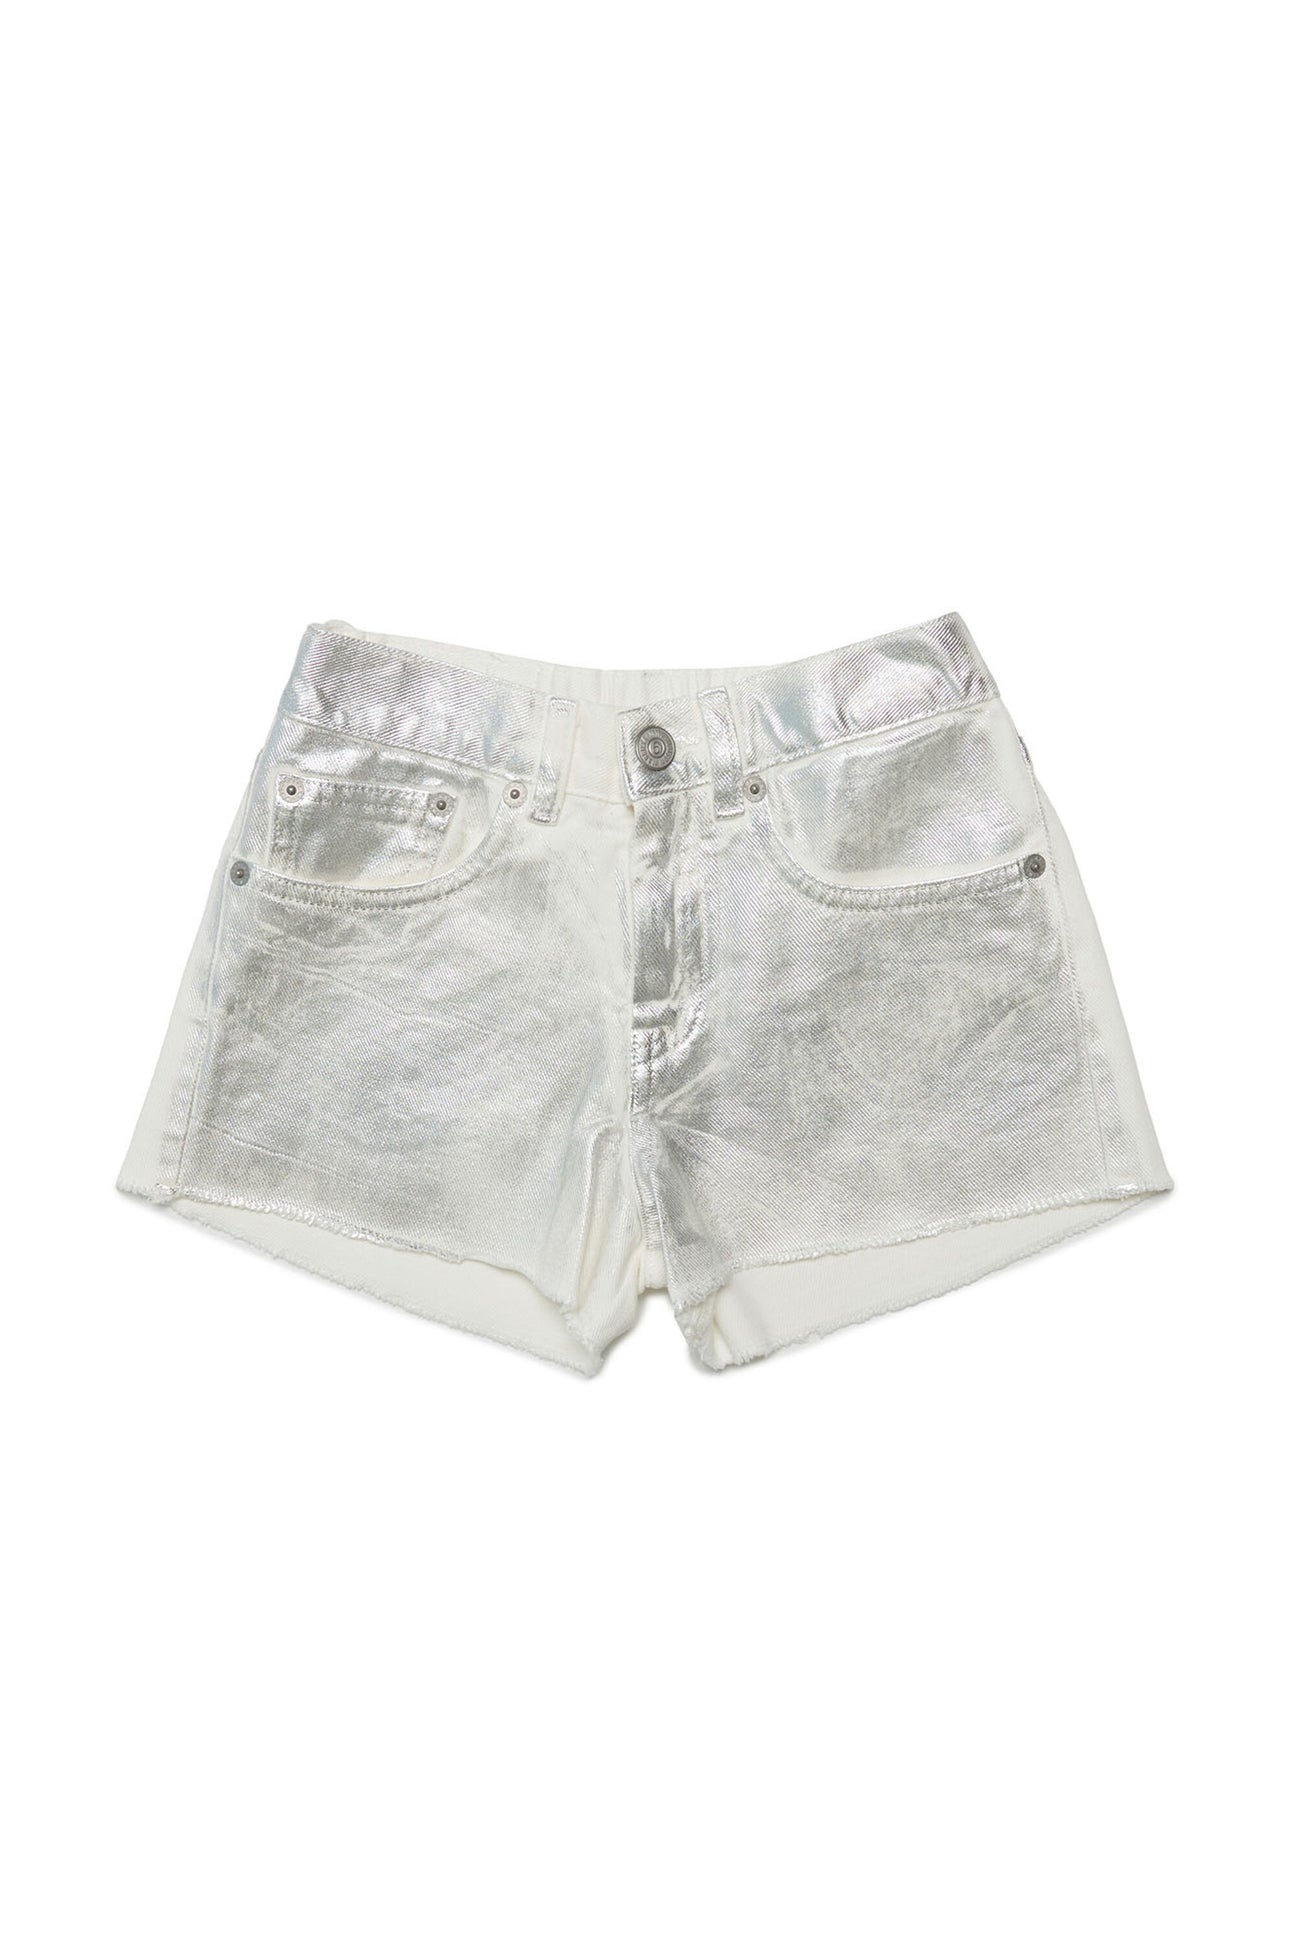 Pantalones cortos denim blancos efecto metalizado 